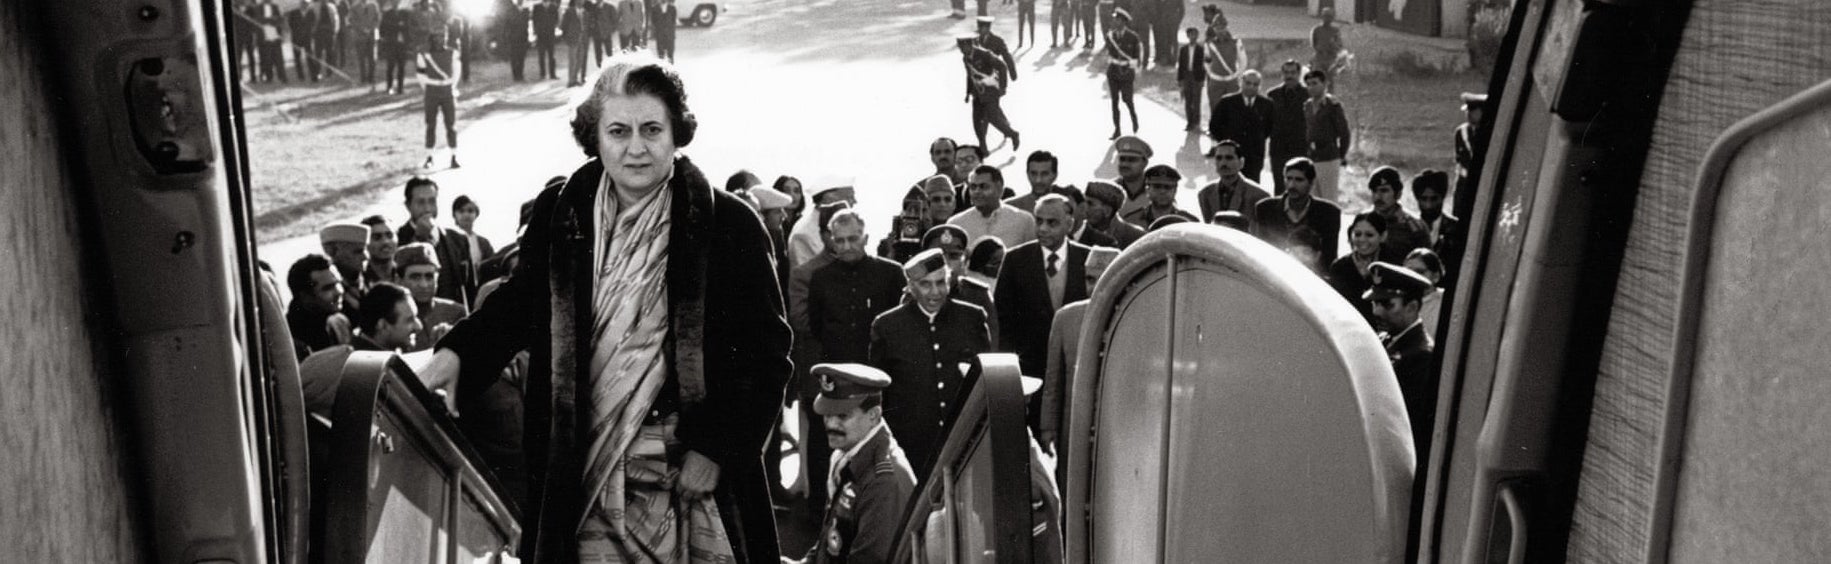 Indira Gandhi boarding a plane, New Delhi, 1972. Photograph: Marilyn Stafford (cropped)